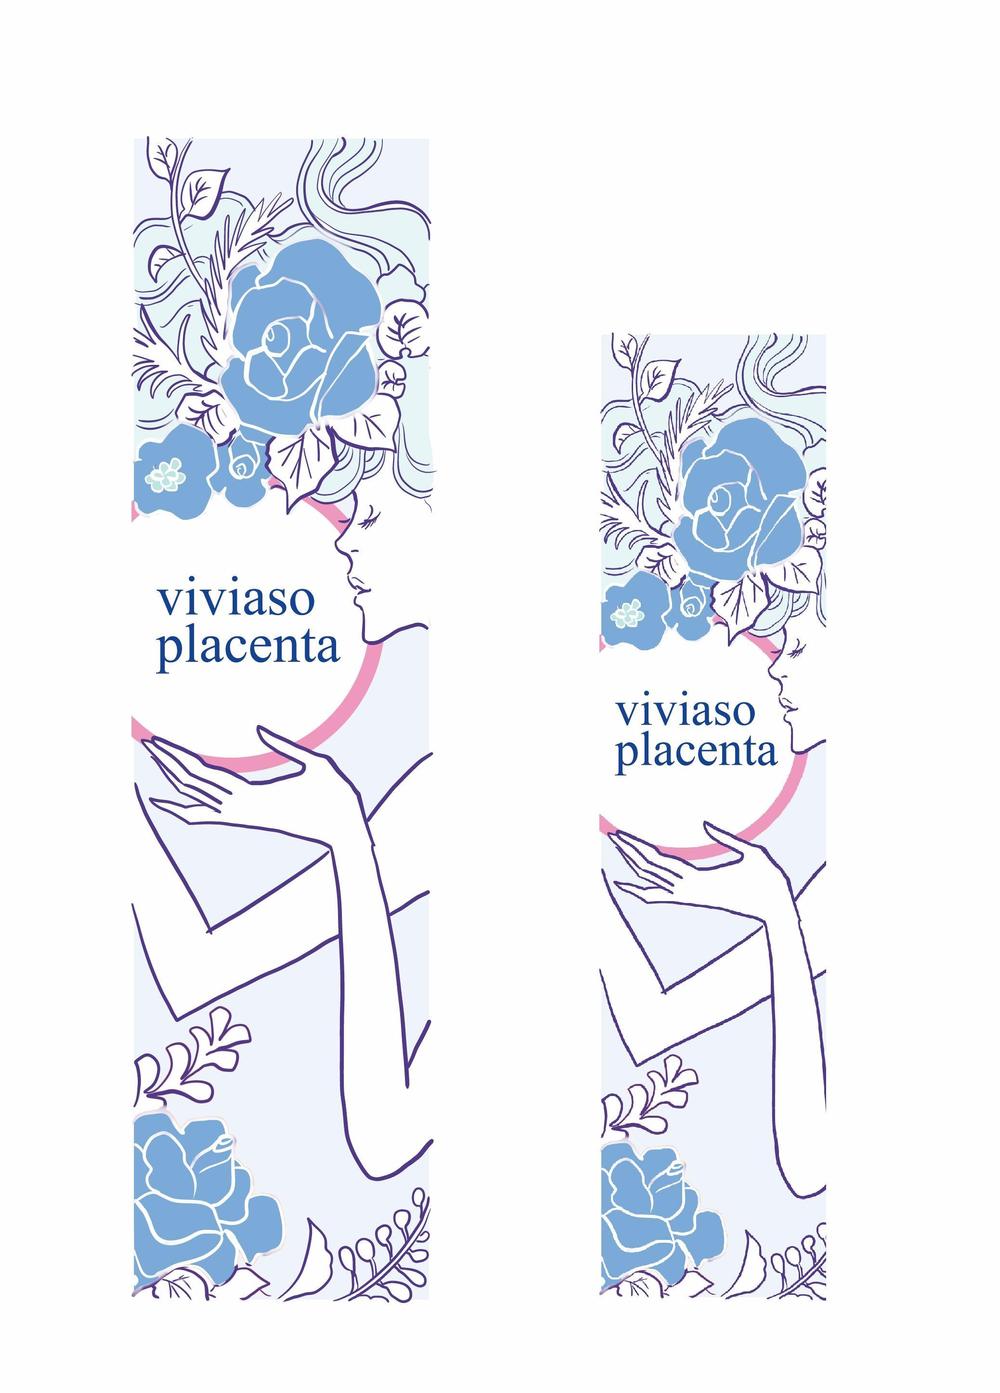 スキンケア新商品「viviaso placenta」のデザイン